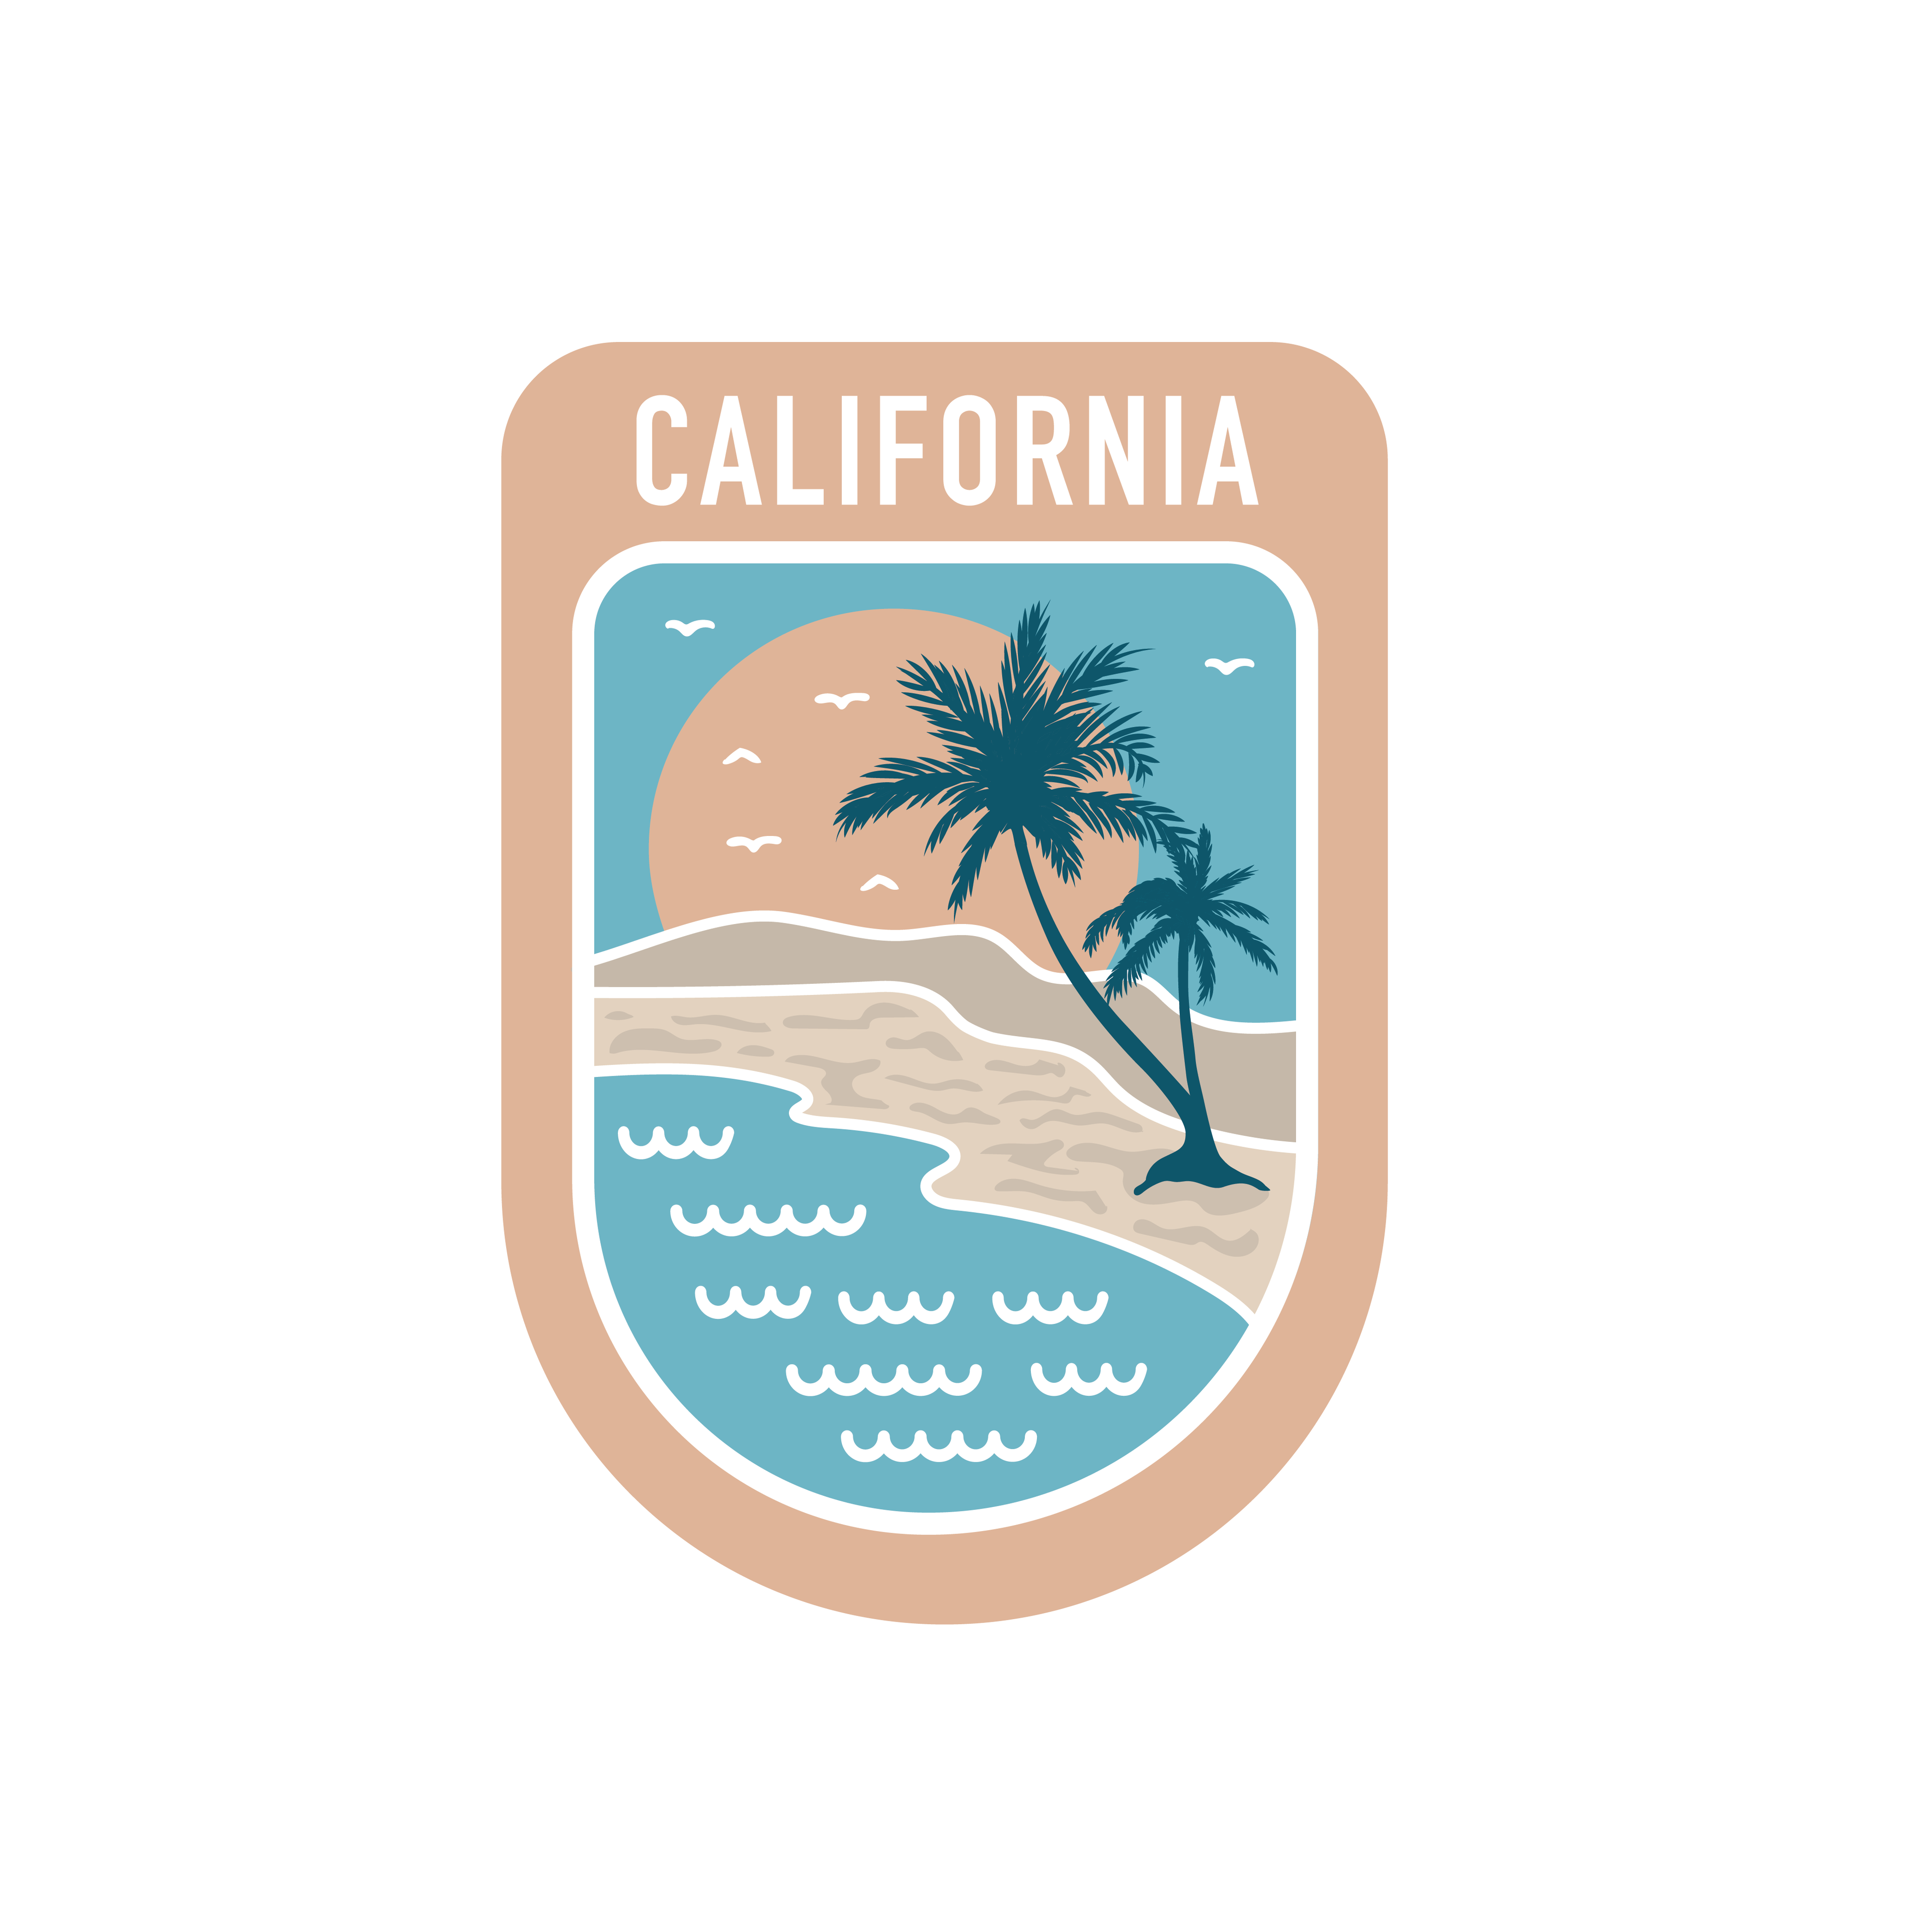 State Scenic Route California - Vinyl Sticker